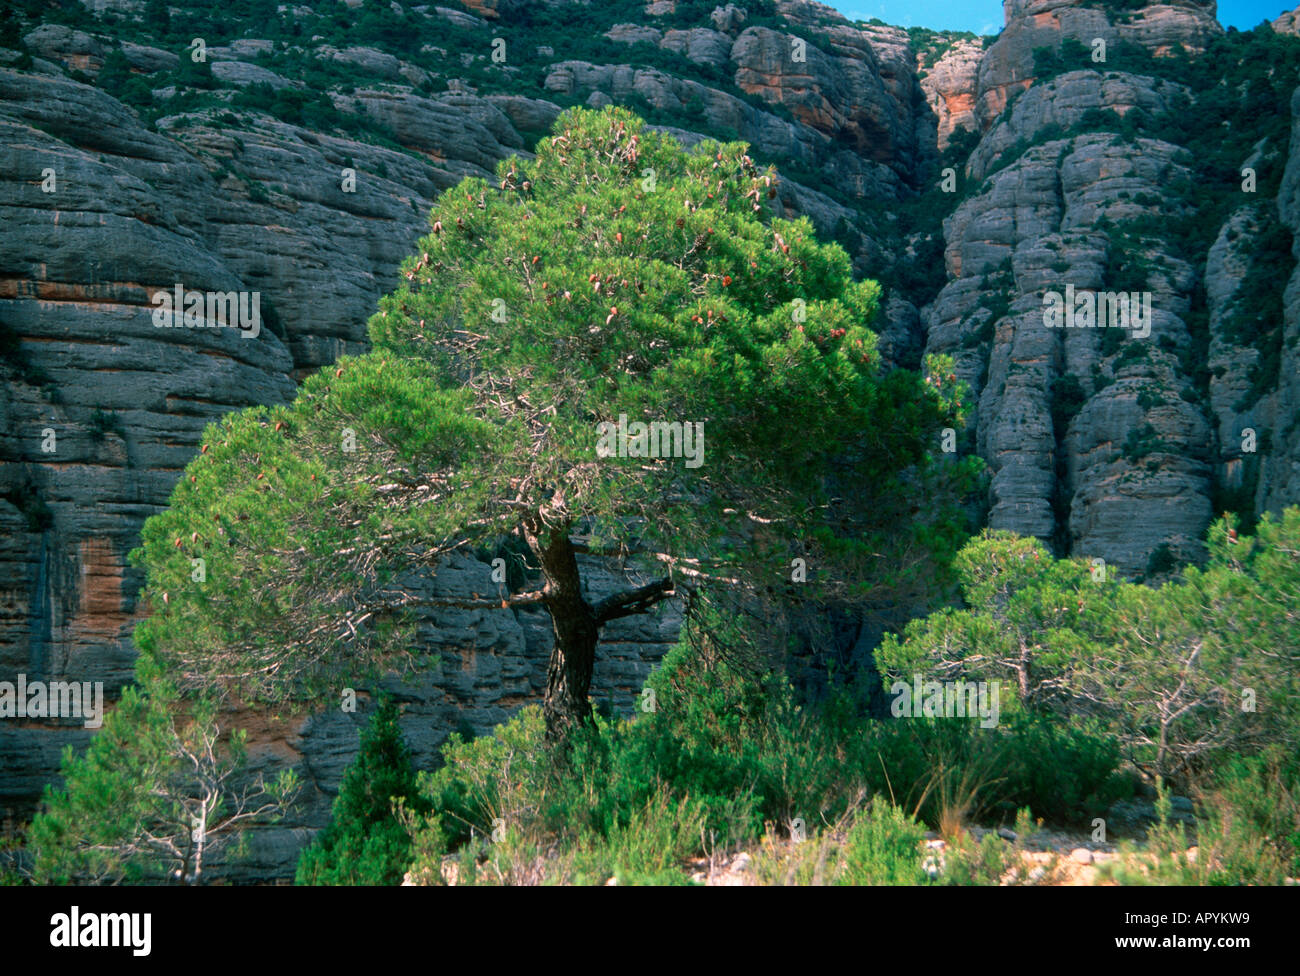 Aleppo pine, Pinus halepensis. Whole tree. Spain Stock Photo